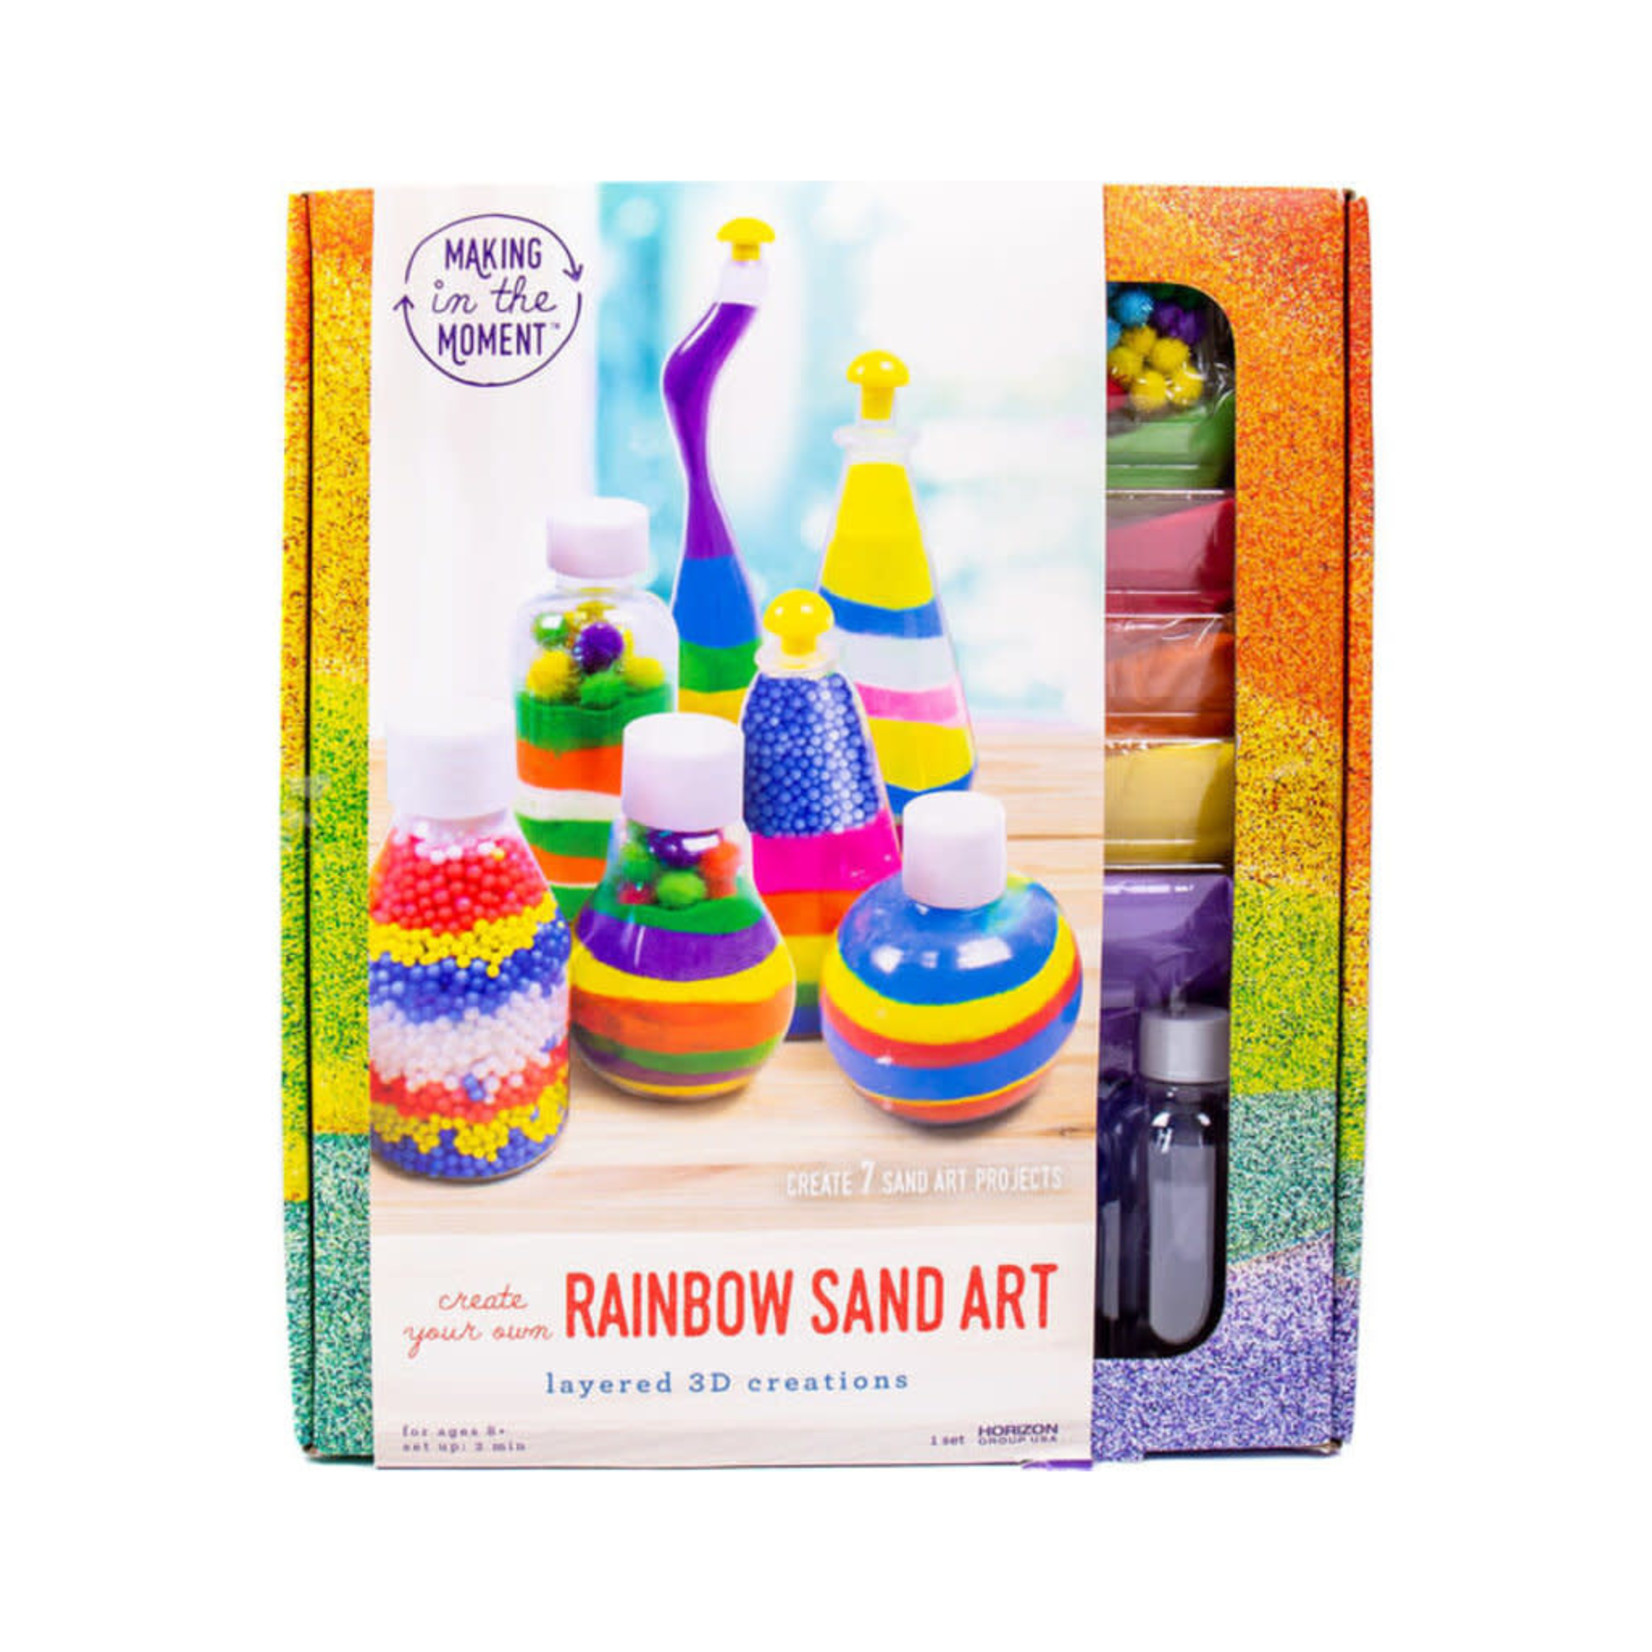 Horizon Rainbow Sand Art